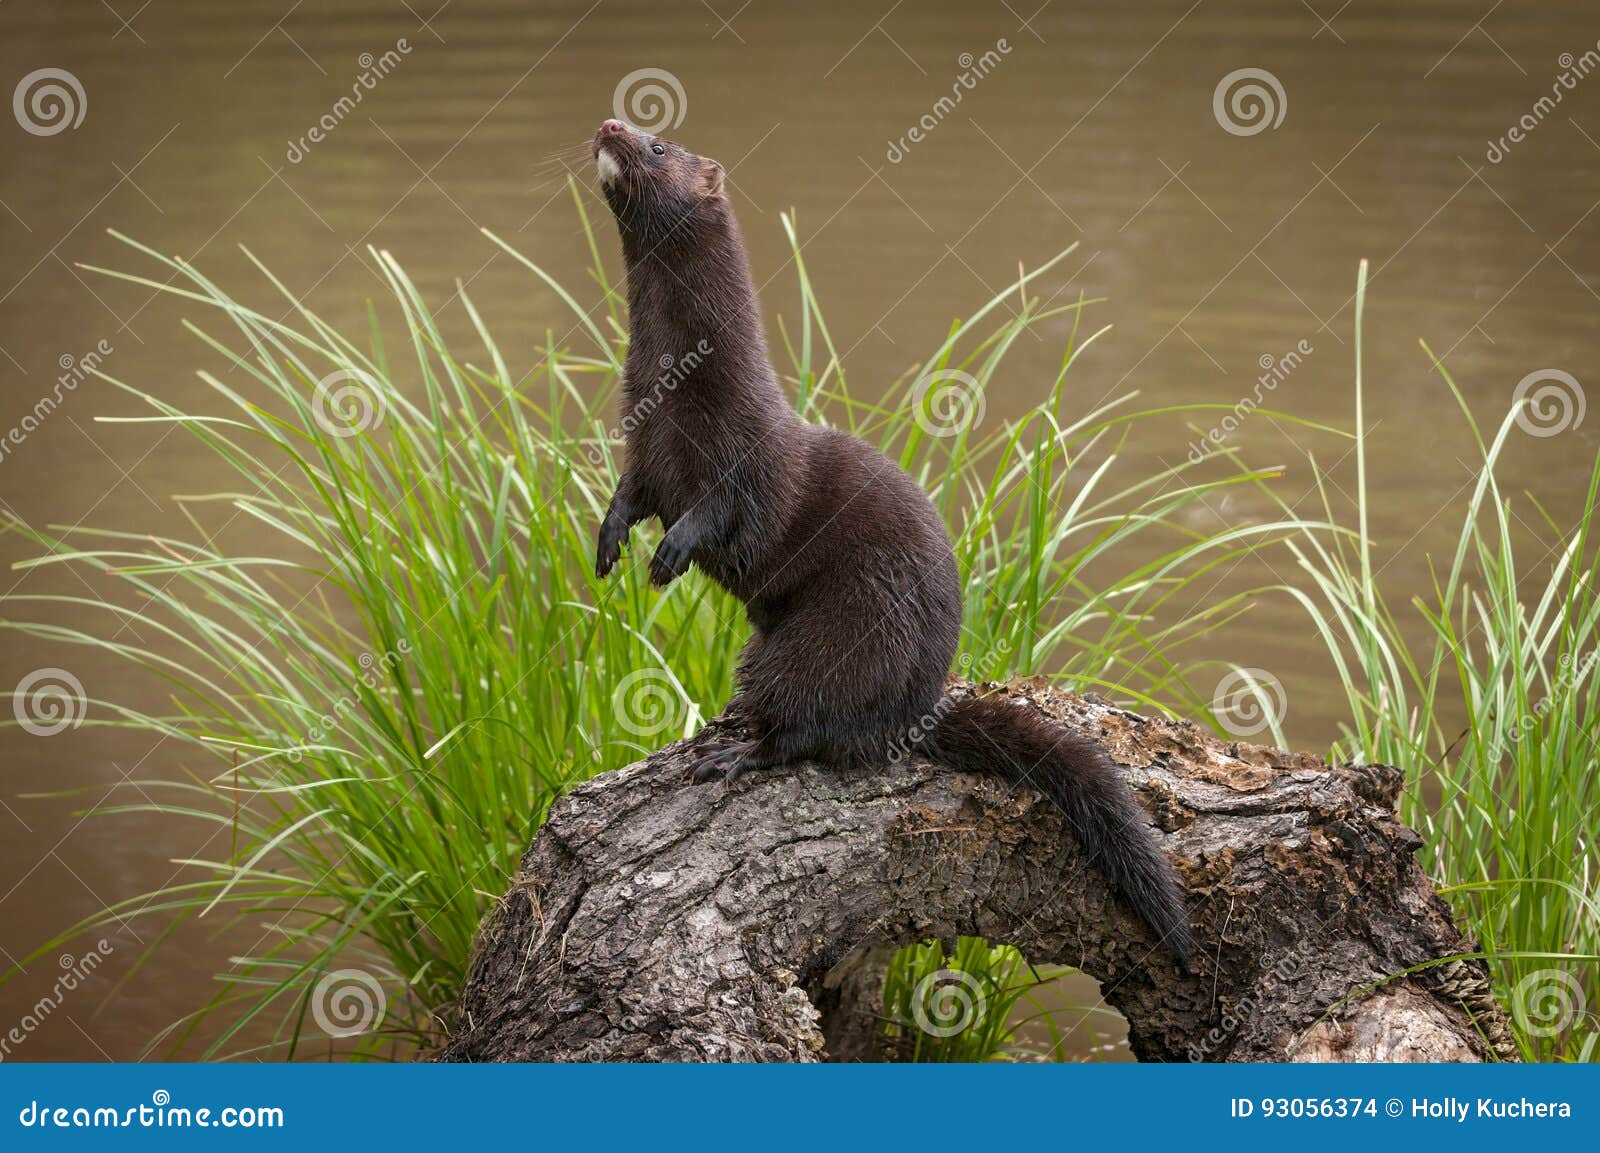 adult american mink neovison vison stands up on log